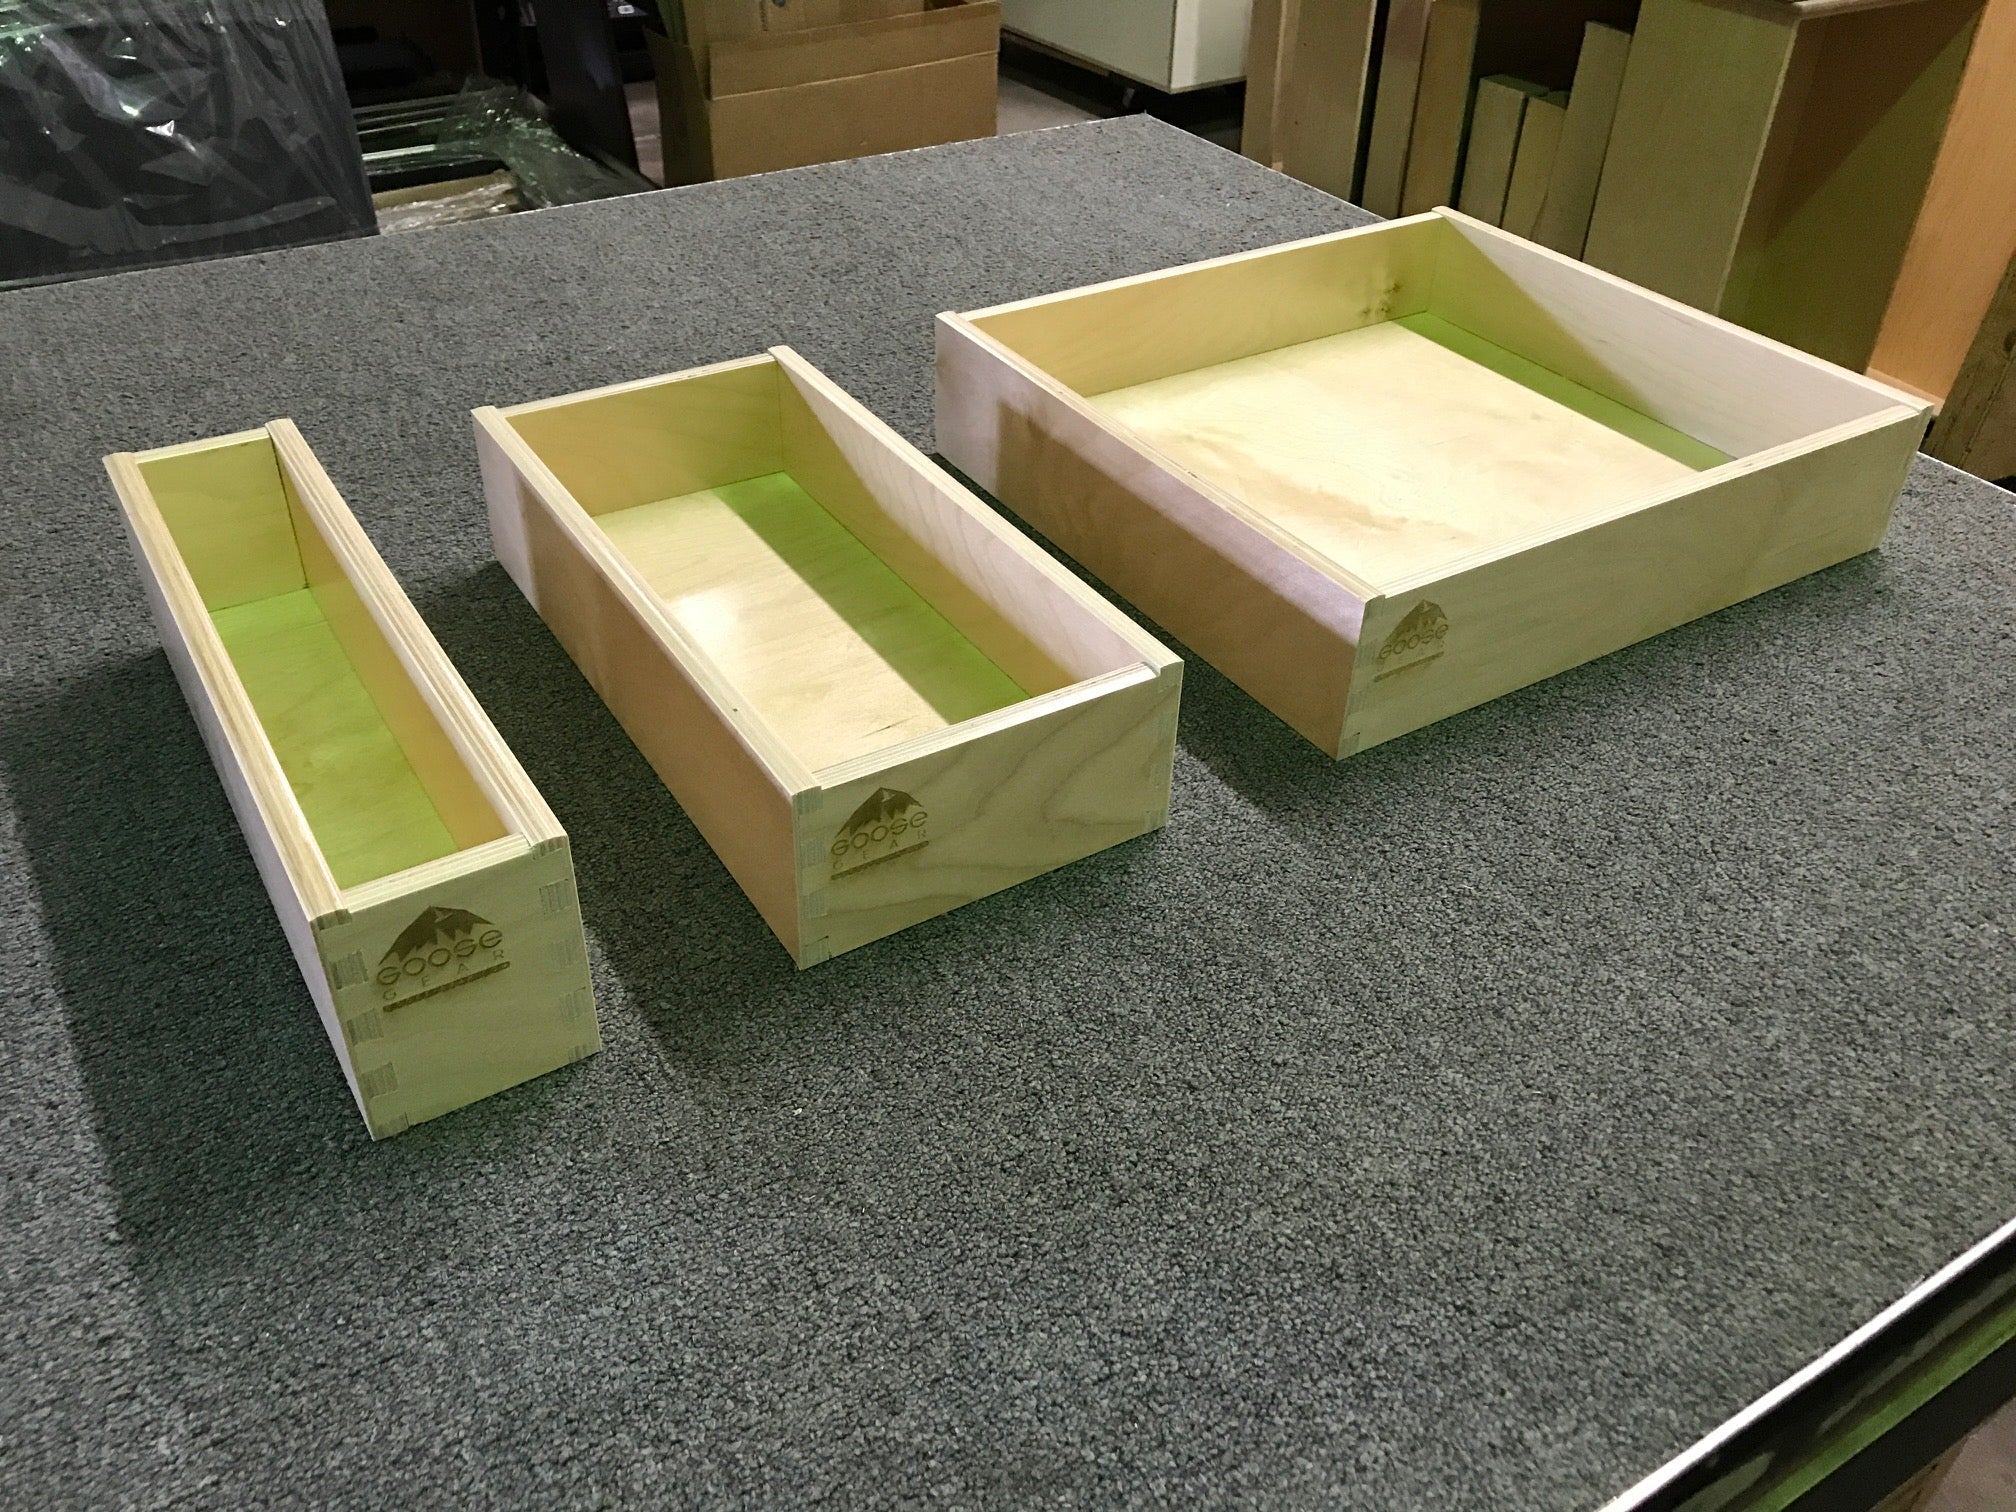 Utensils Box XL for Goose Gear® CampKitchen 2.4